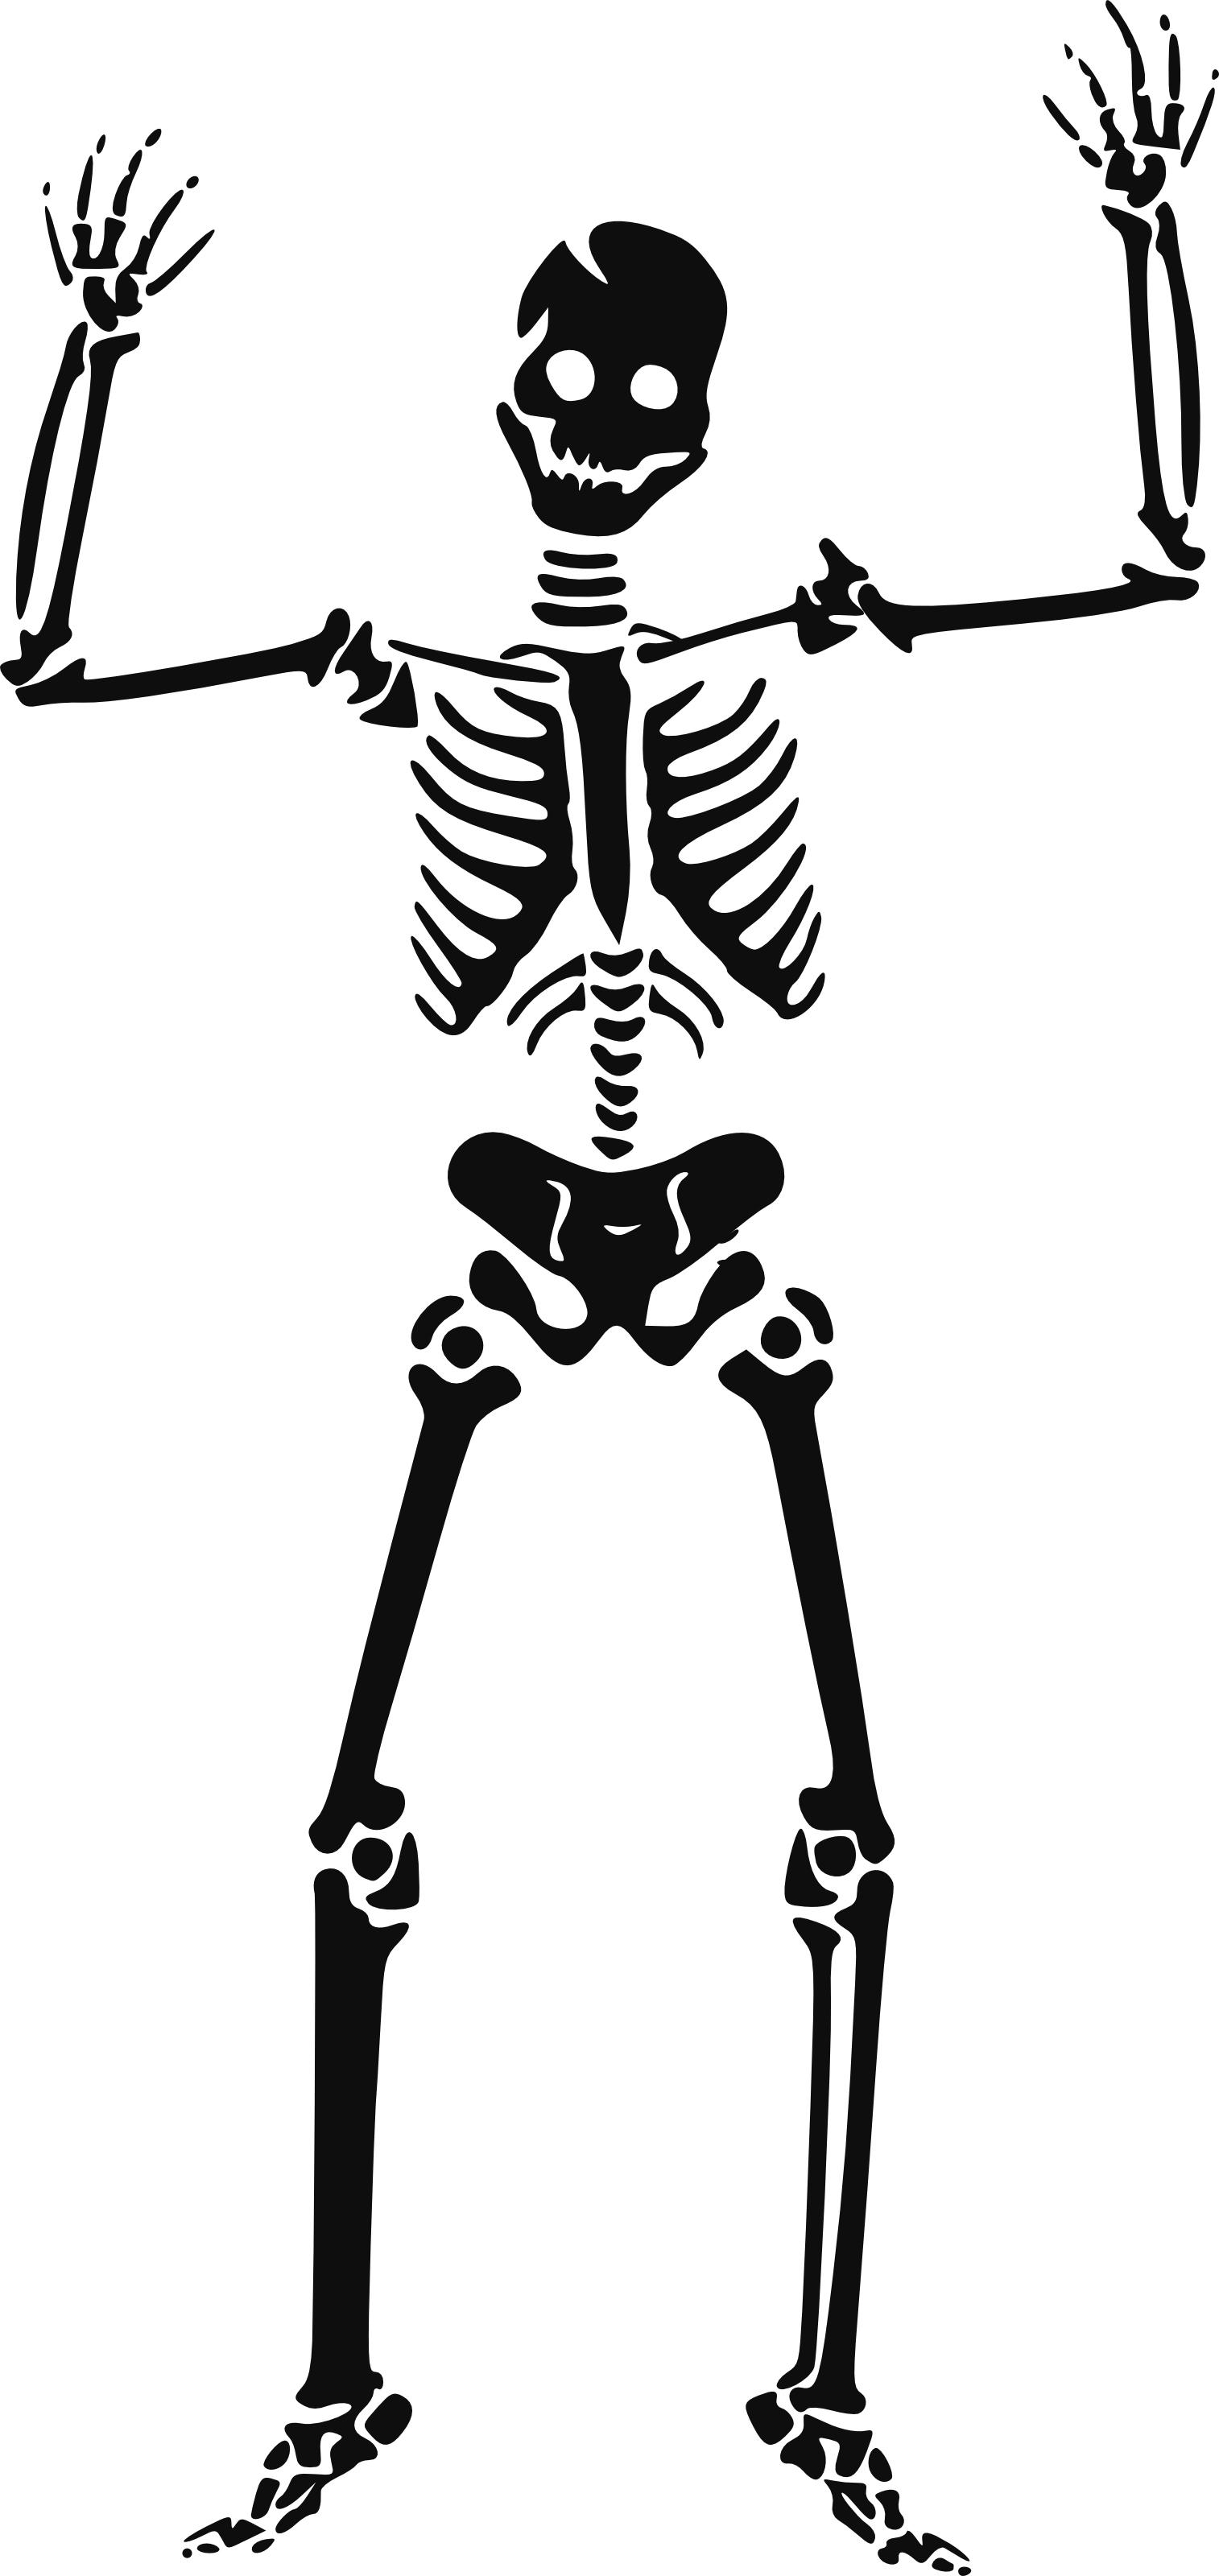 Images For > Dancing Skeleton Clip Art